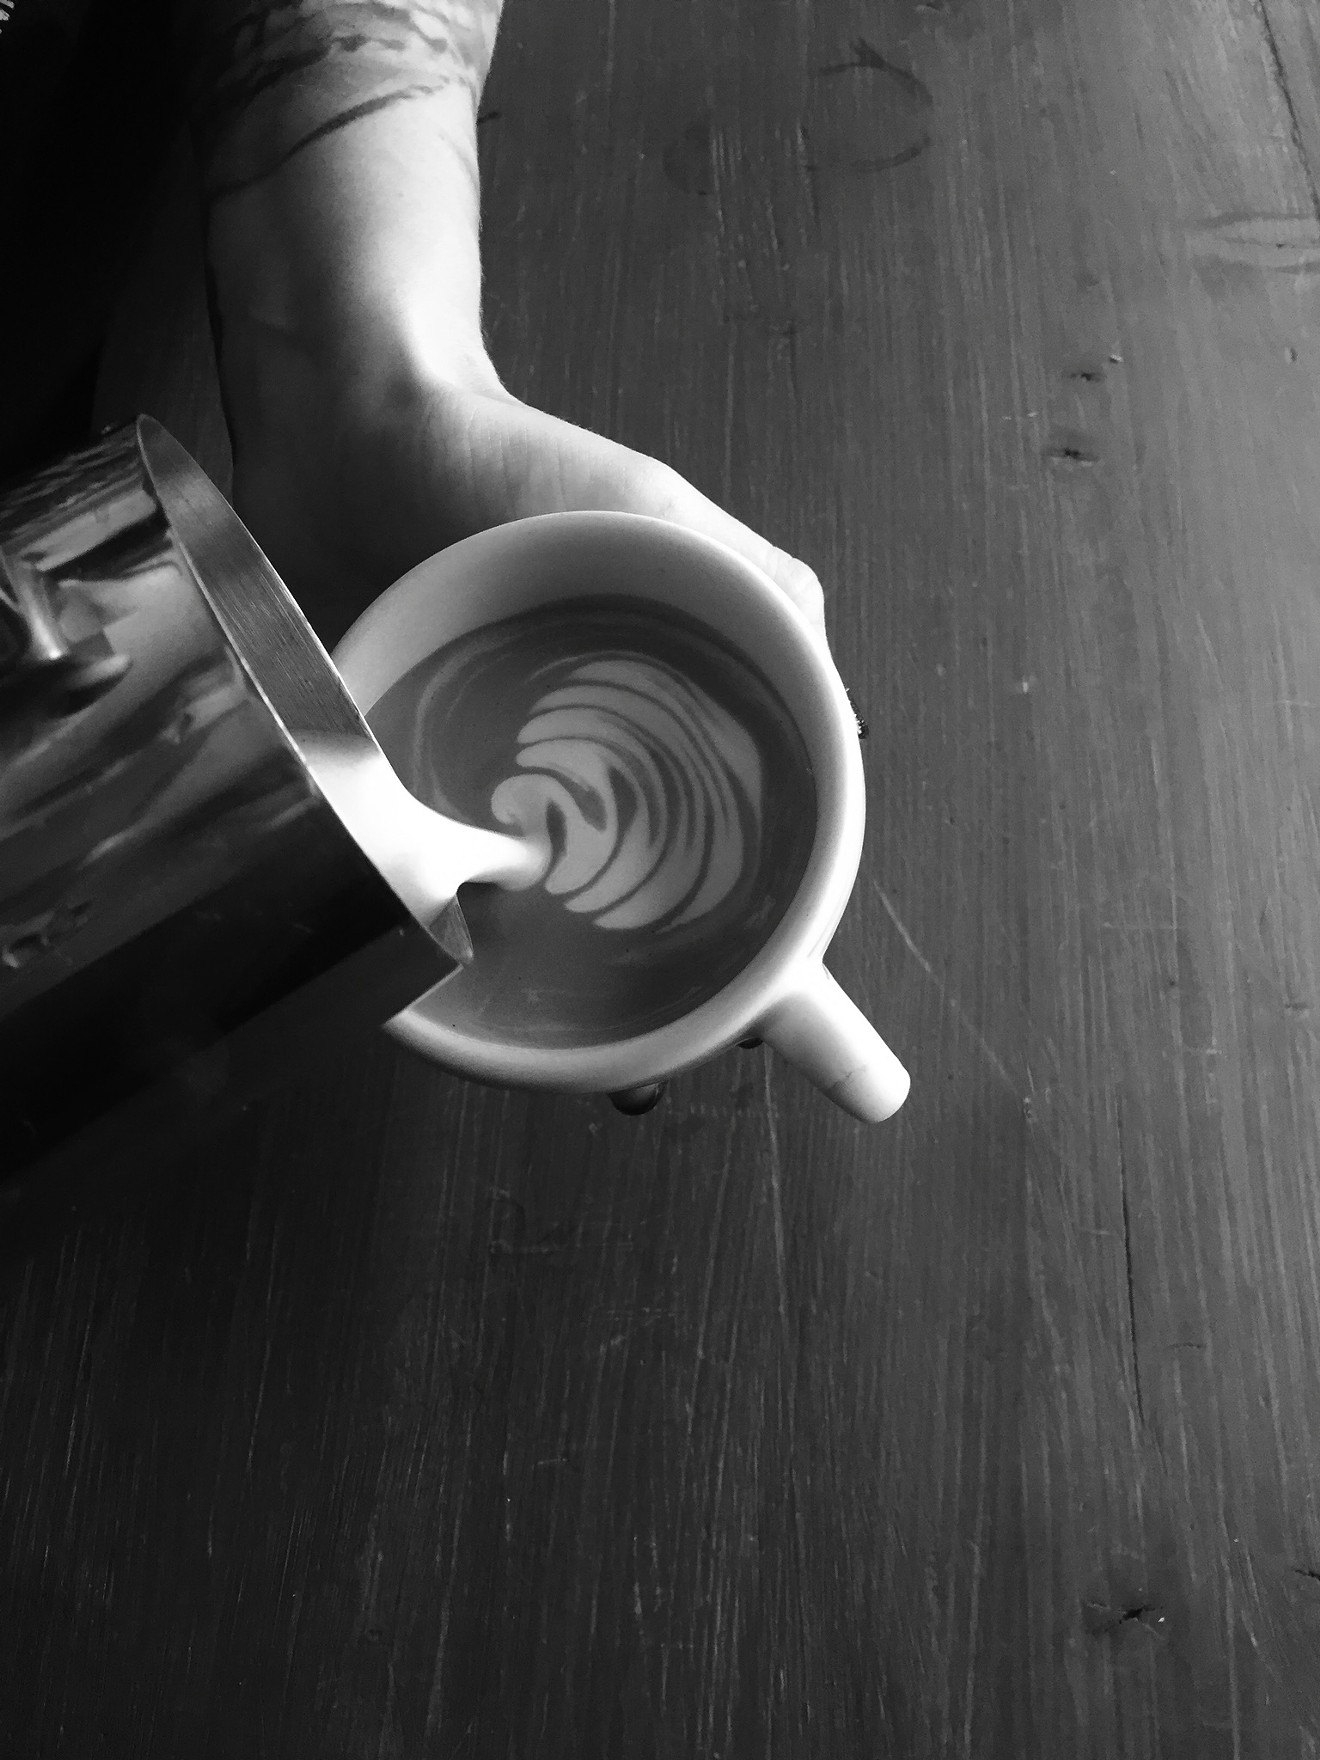 Leafy latte art.